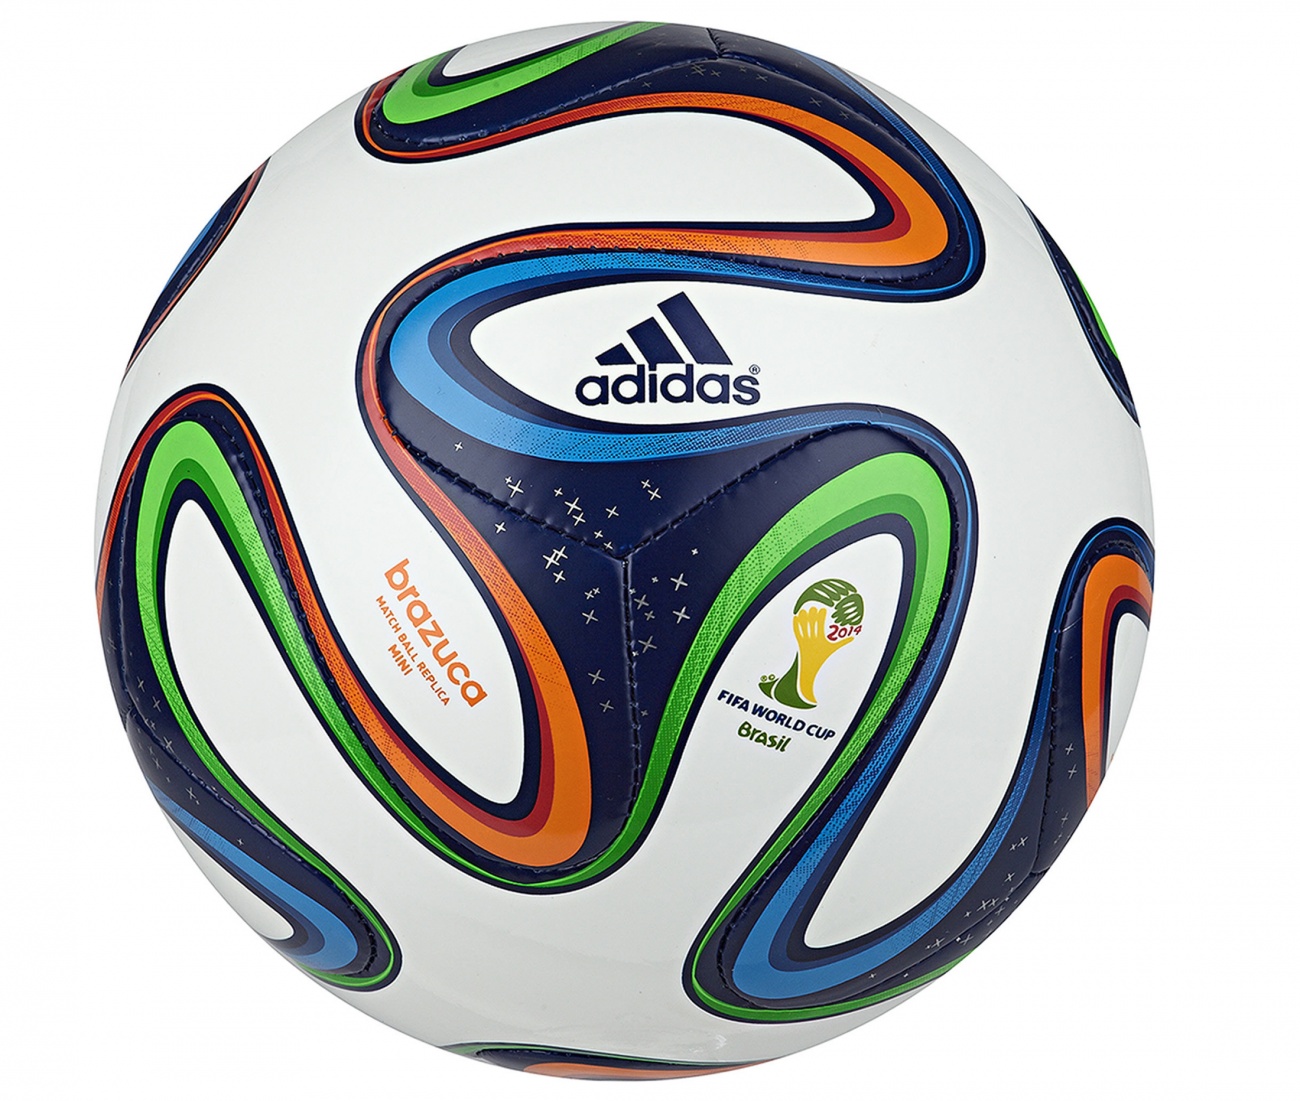 Le ballon de la coupe du monde est un vrai concentré de technologie